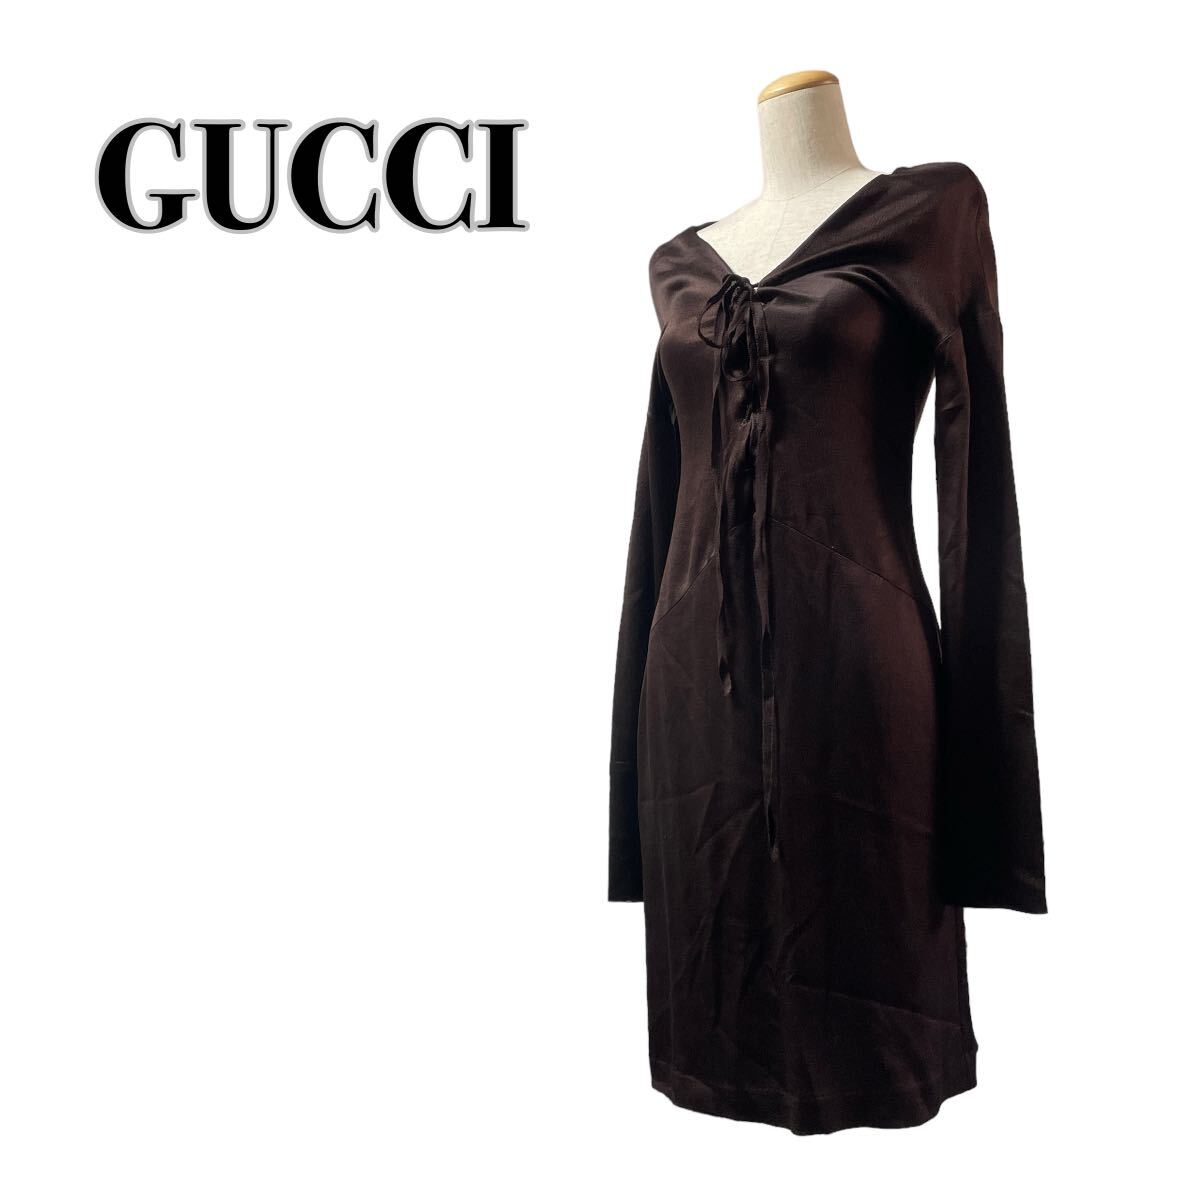 GUCCI グッチ シルク100% 長袖ワンピース 茶 ブラウン リボン ドレス イタリア製 40 L_画像1